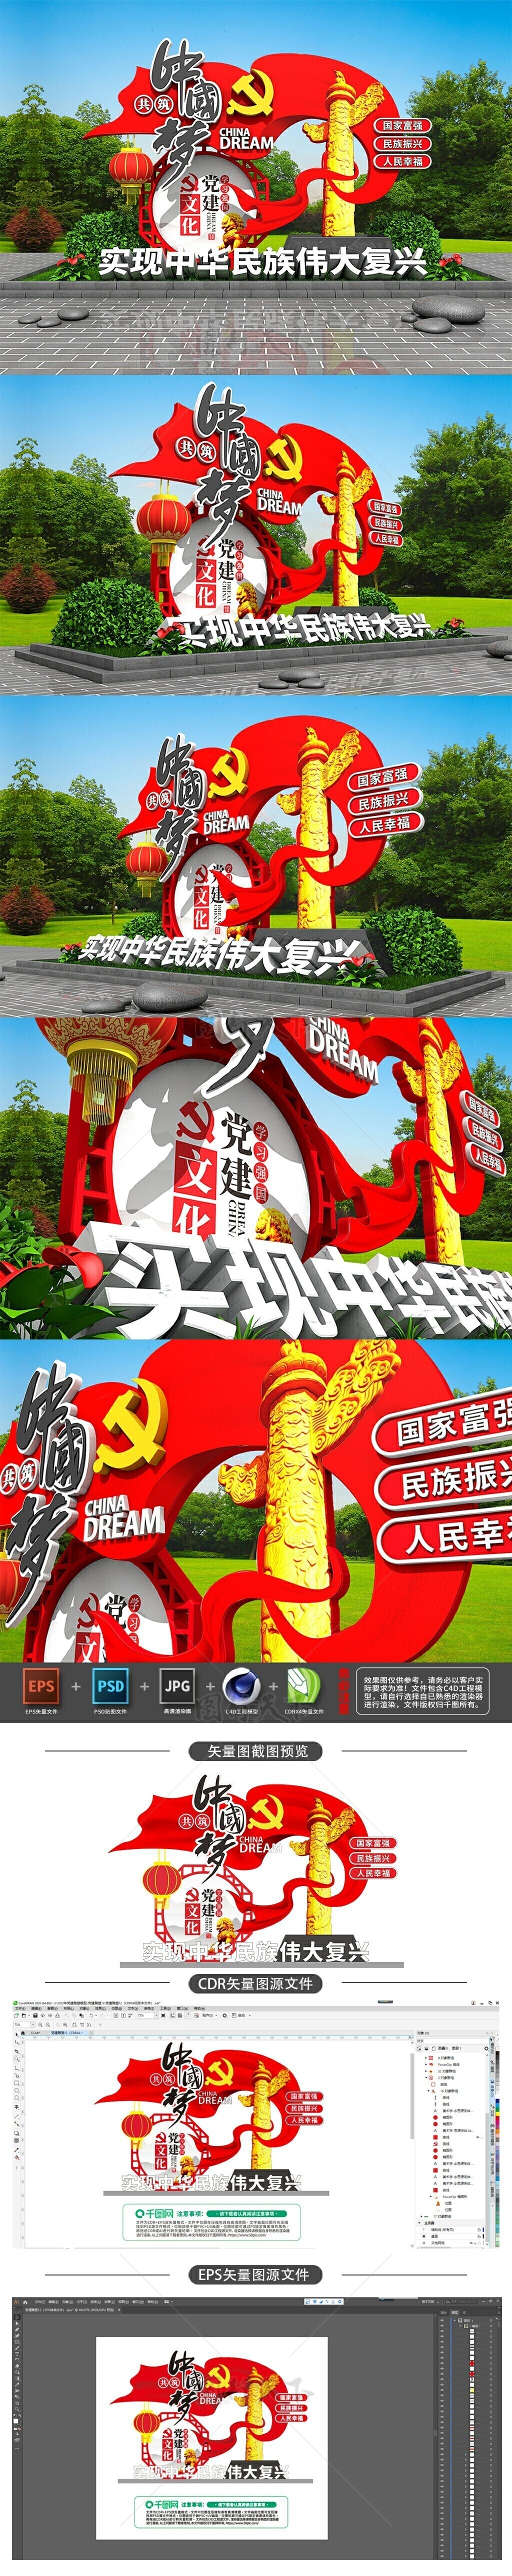 原创3D立体创意中国梦党建文化雕塑景观